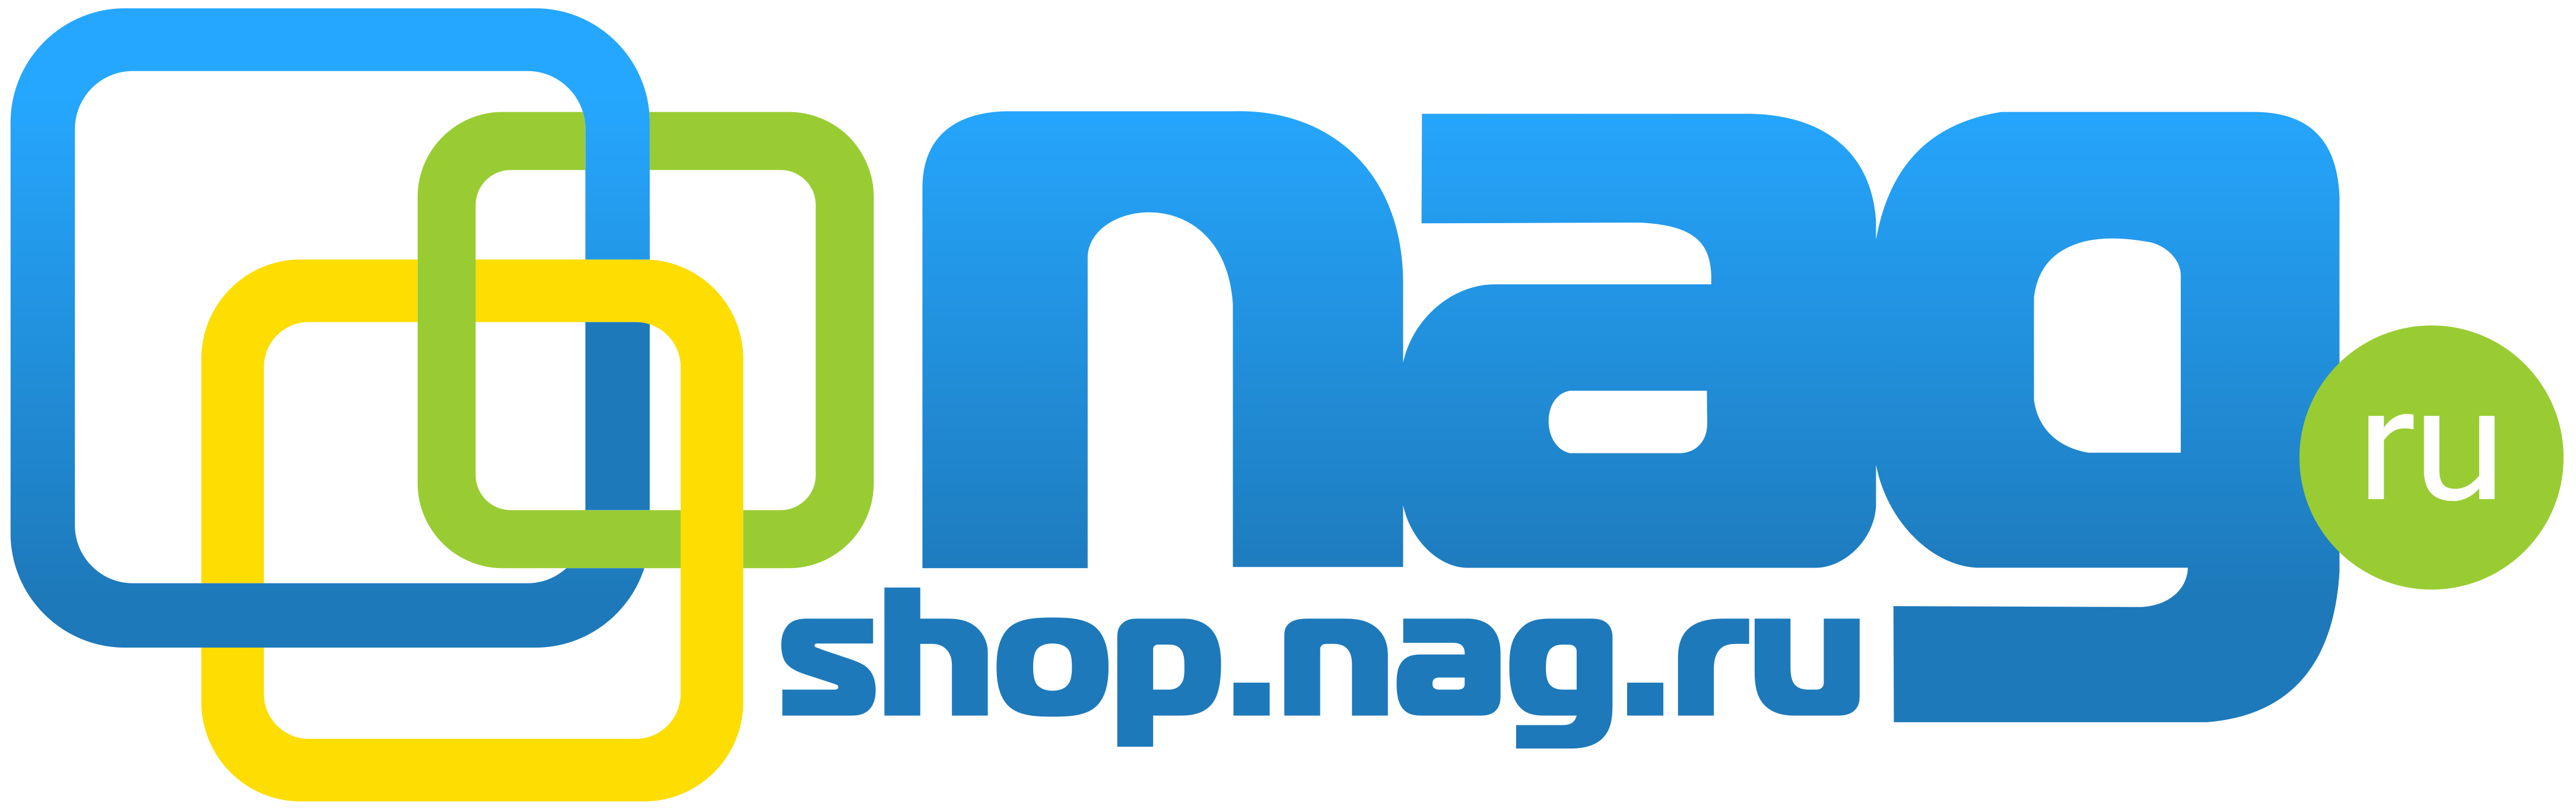 Nag.ru